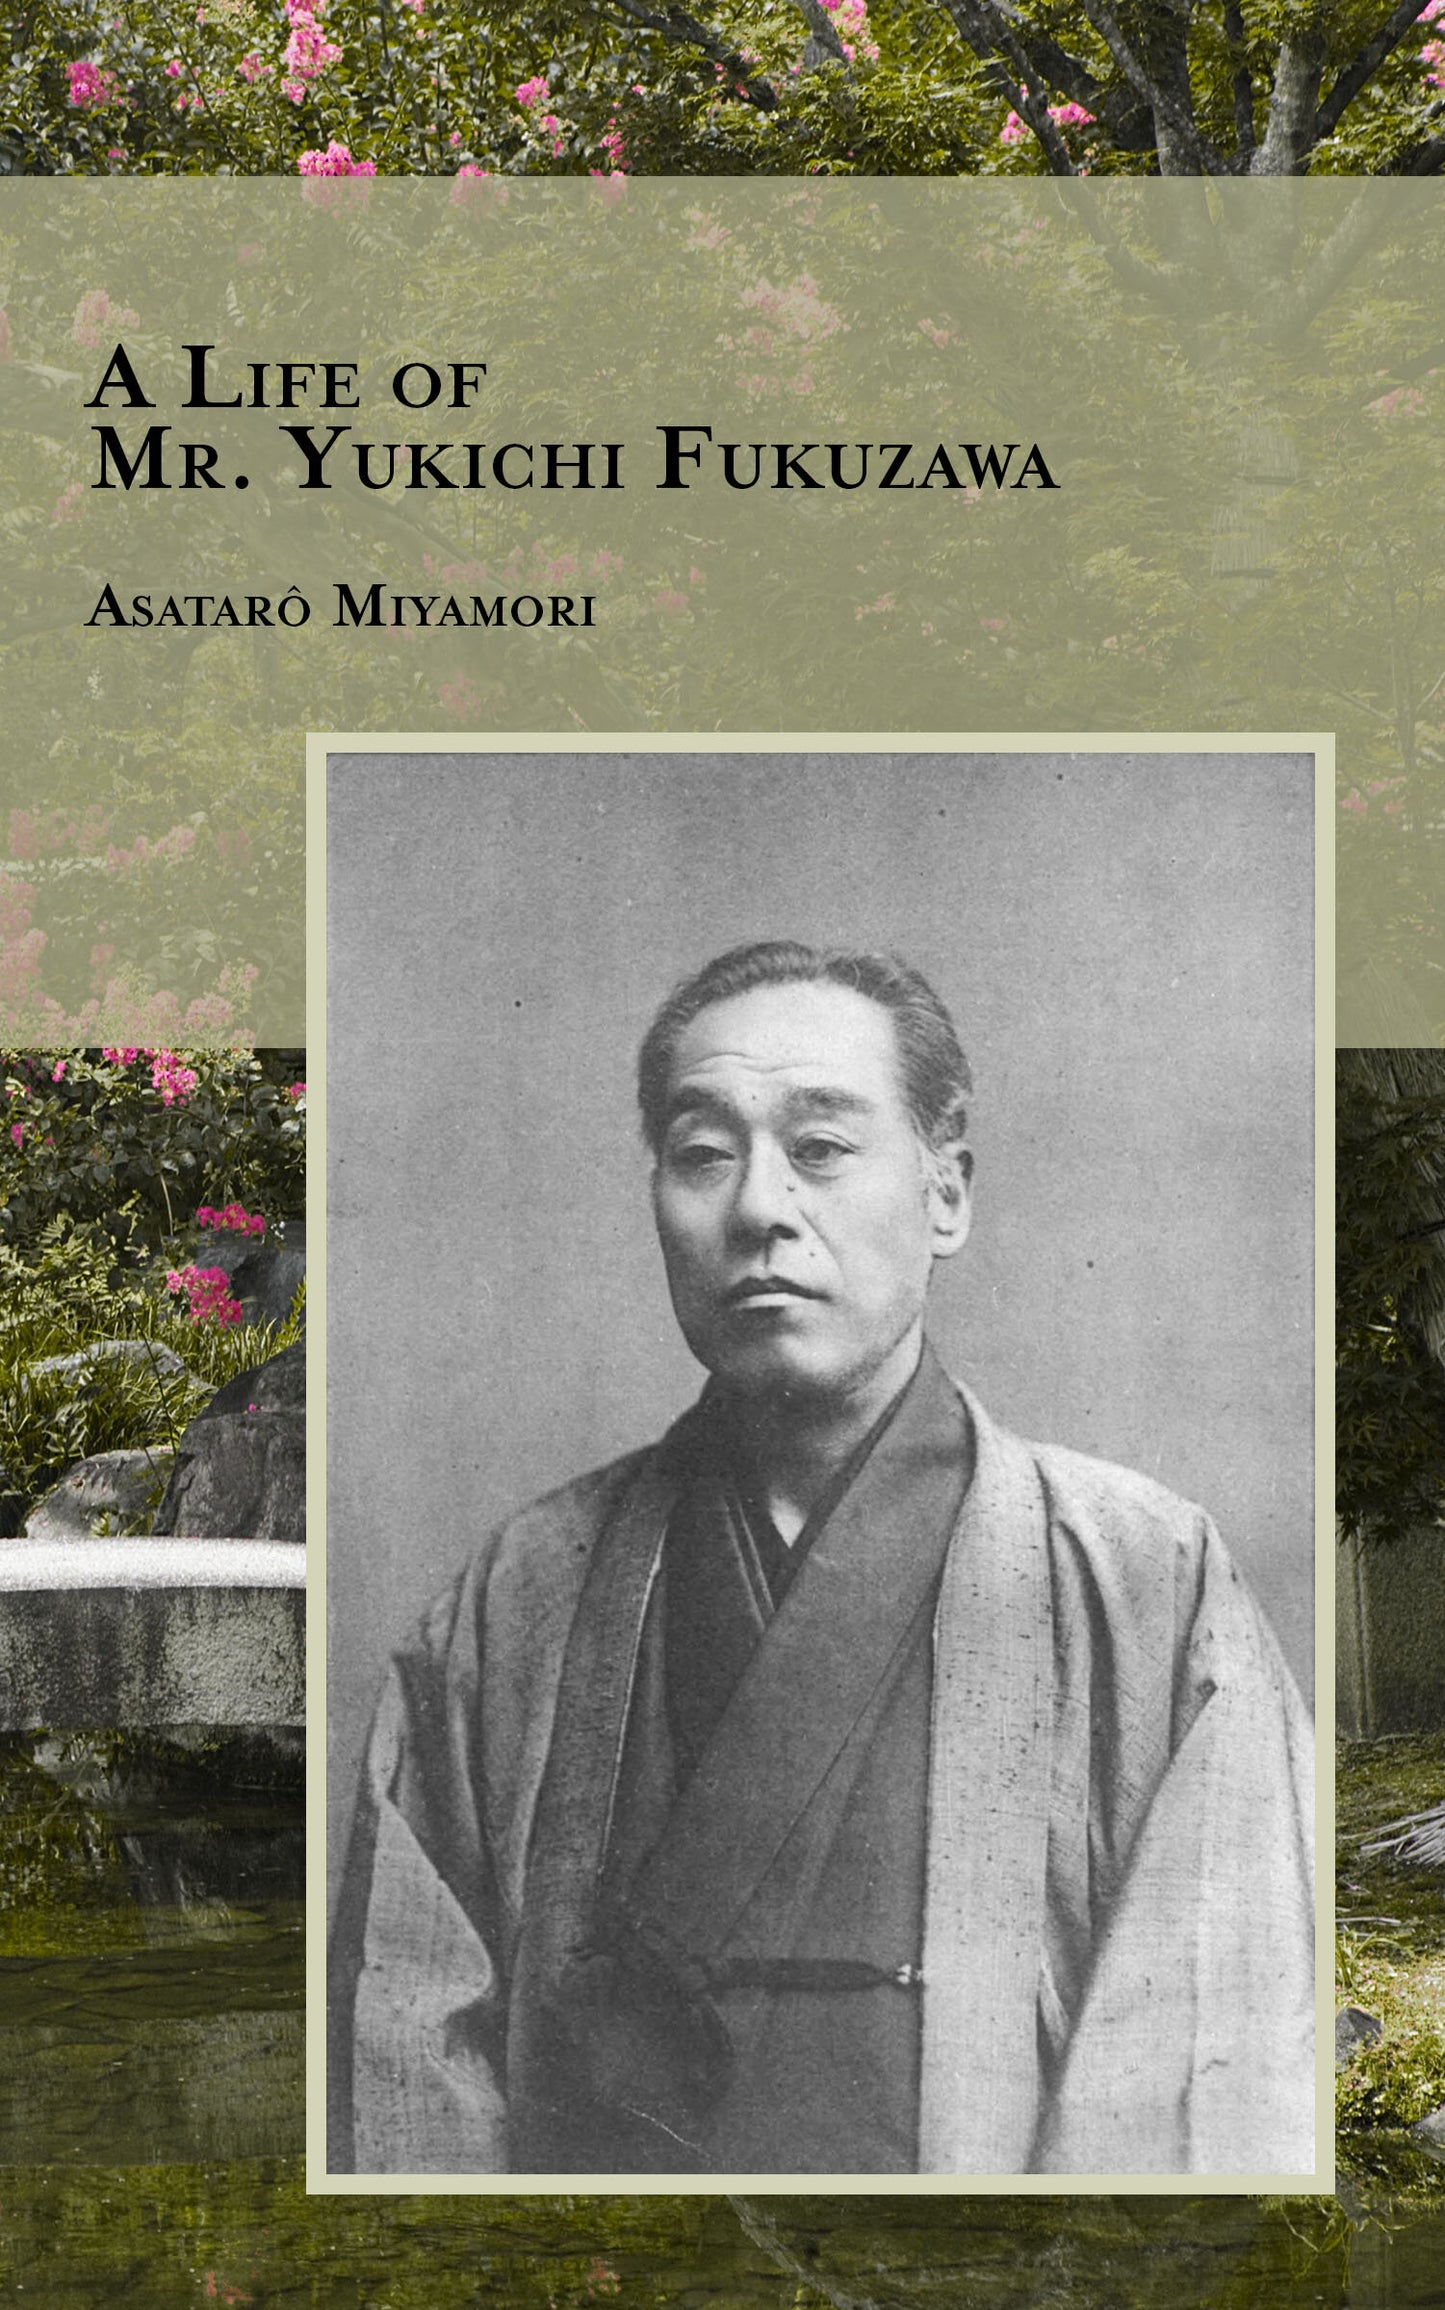 A Life of Mr. Yukuchi Fukuzawa